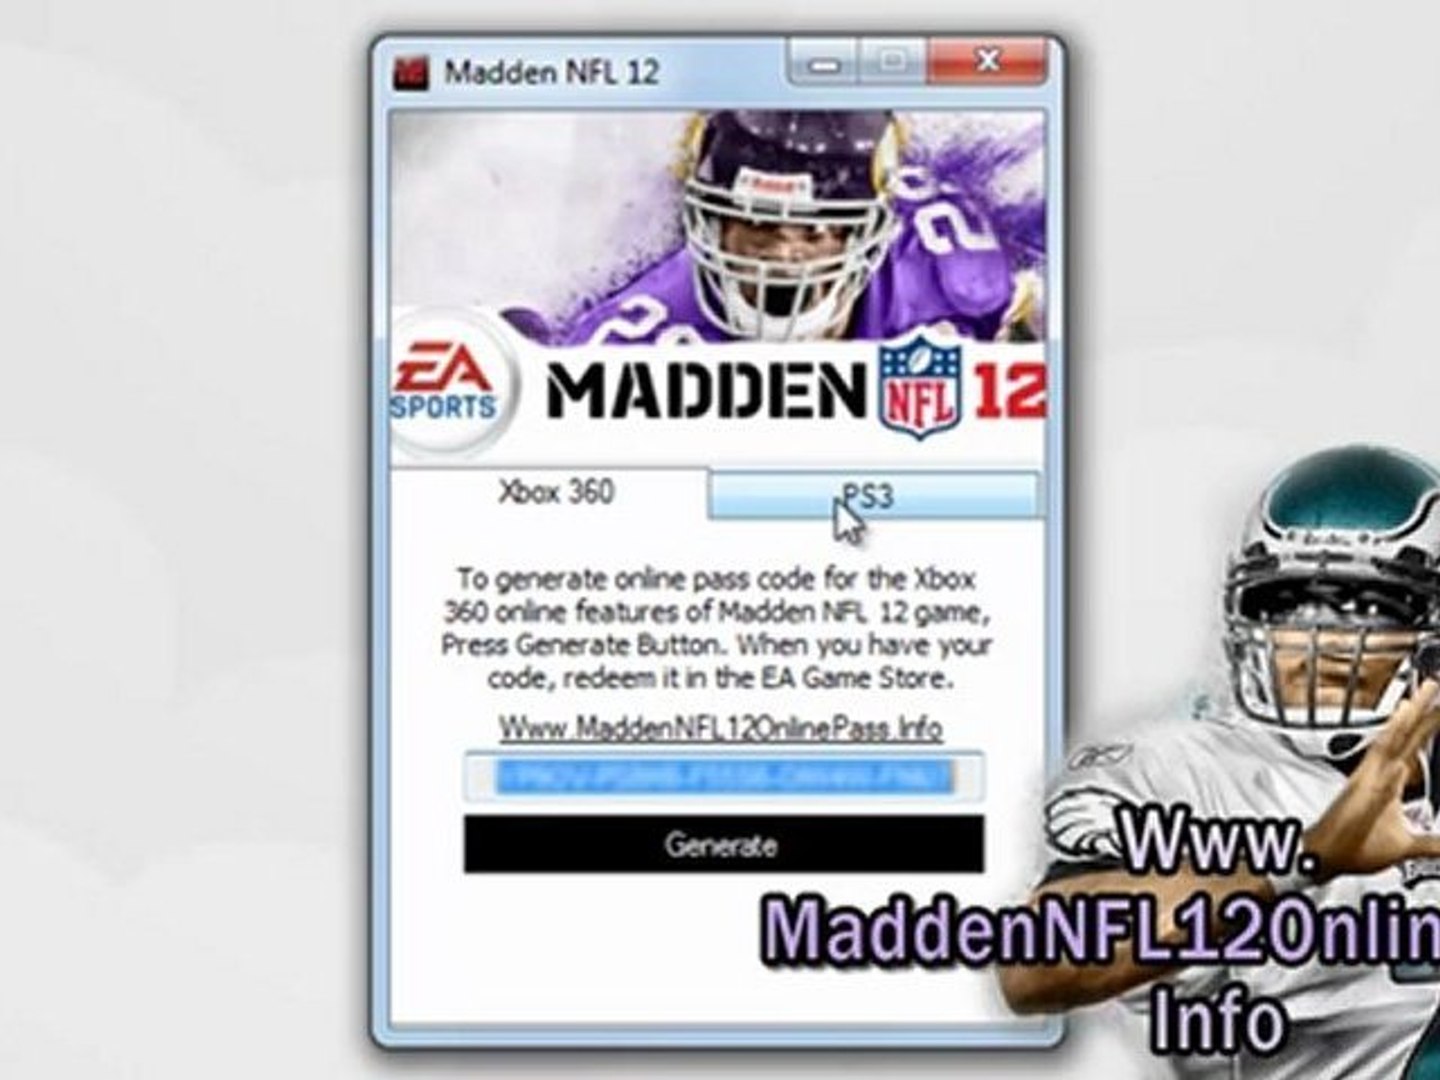 Madden NFL 12 Online Pass Code Unlock Tutorial